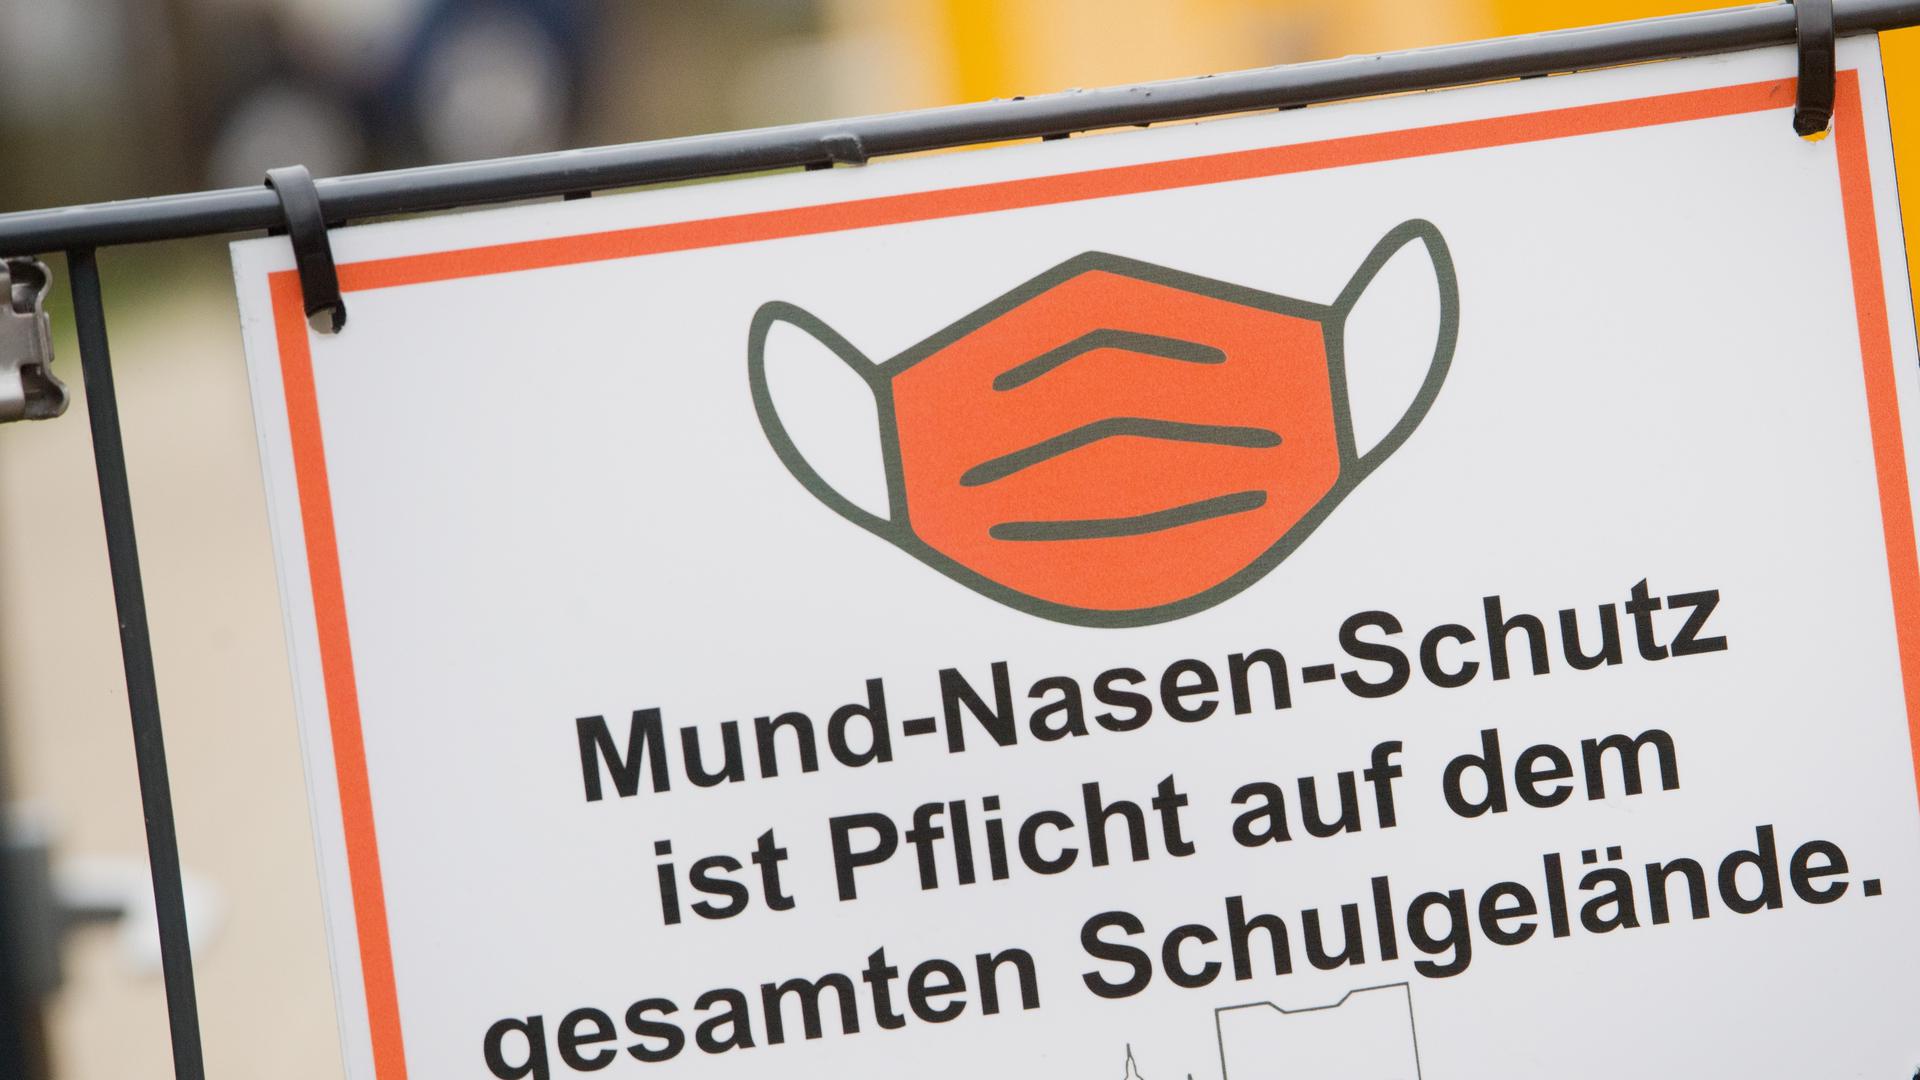 Der Schriftzug «Mund-Nasen-Schutz ist Pflicht auf dem gesamten Schulgelände» und ein Piktogramm einer Maske sind auf einem Schild am Eingang einer Schule zu sehen.